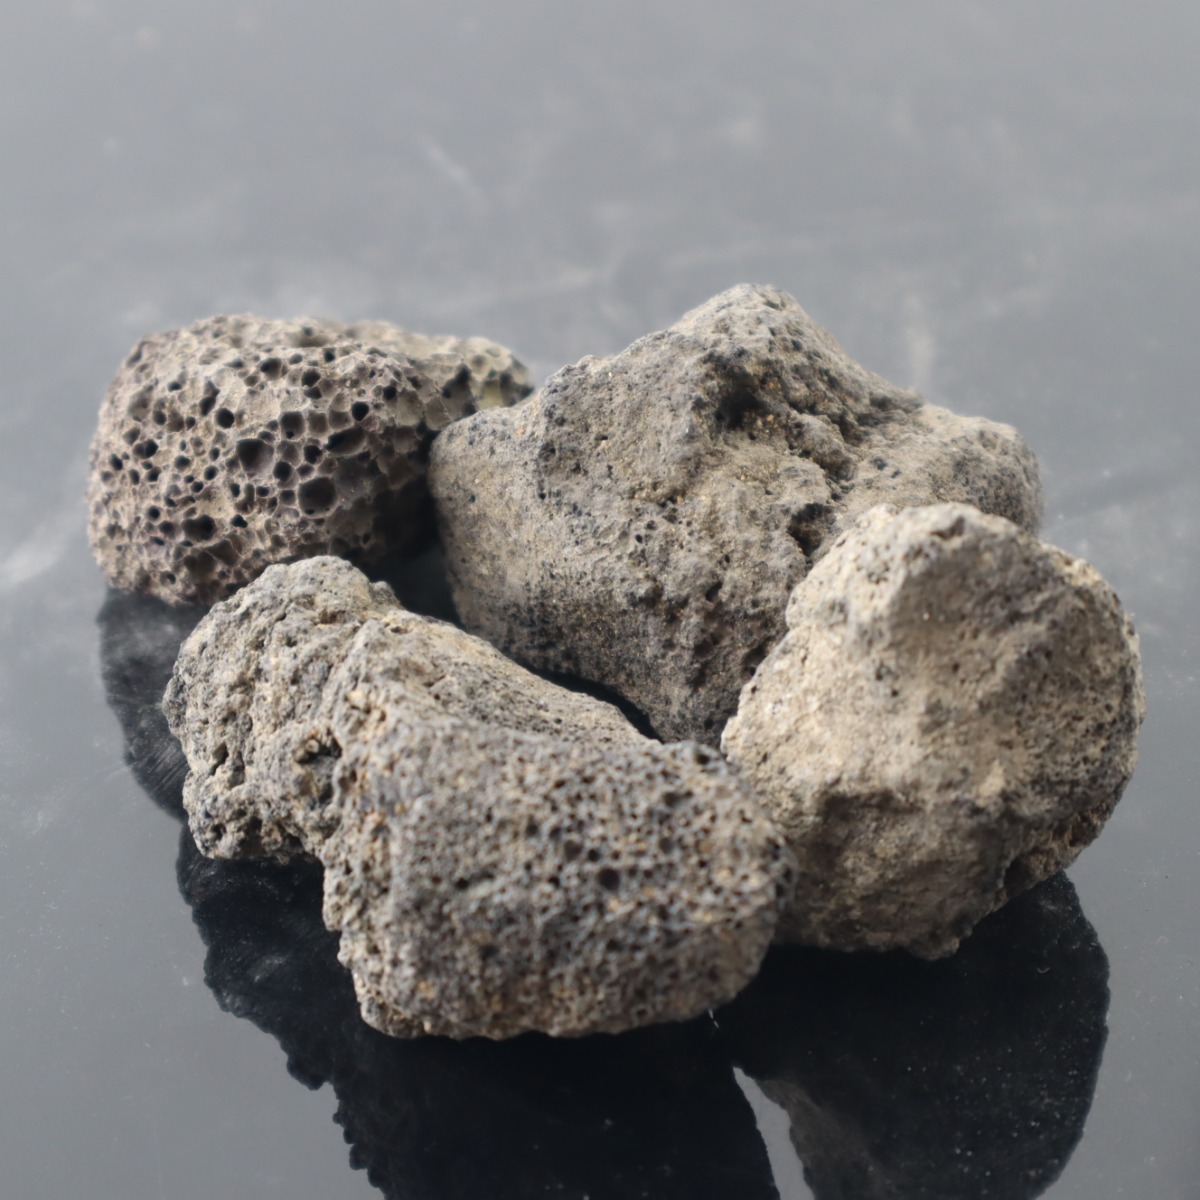 احجار بركانية سوداء لاحواض اسماك الزينة و التيراريوم